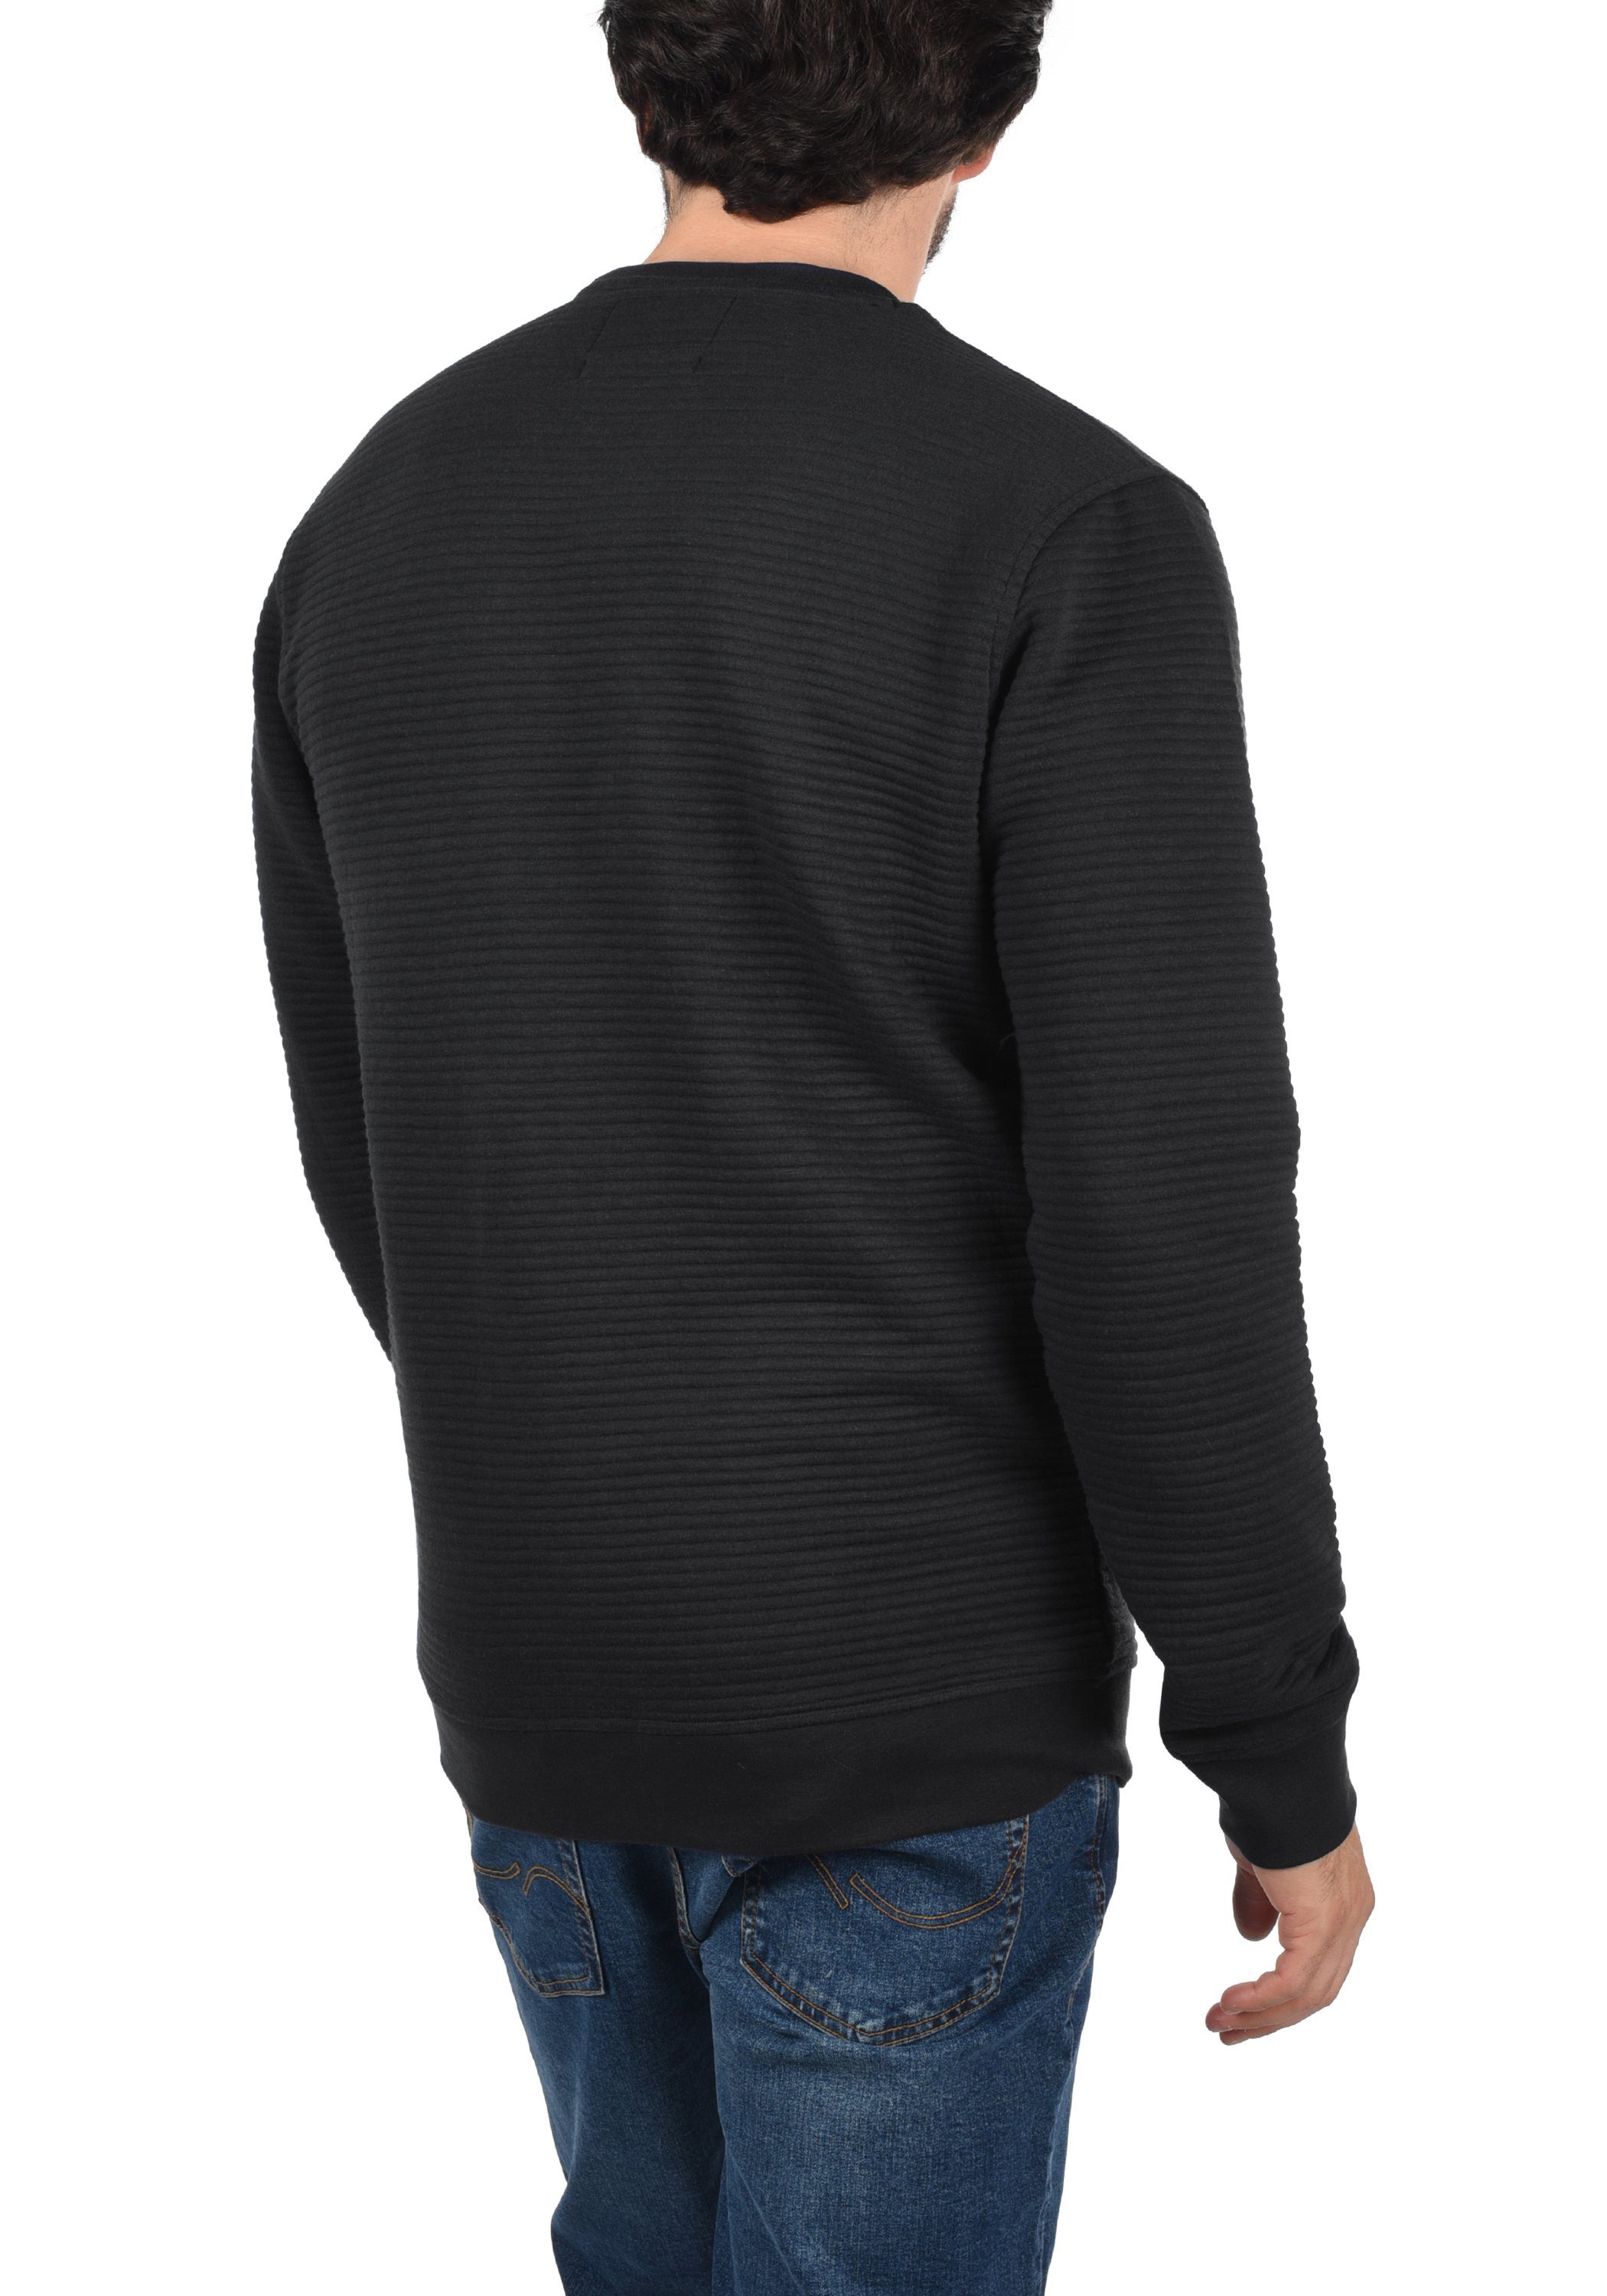 IDBronn (999) Black Sweatshirt Indicode Sweatpulli